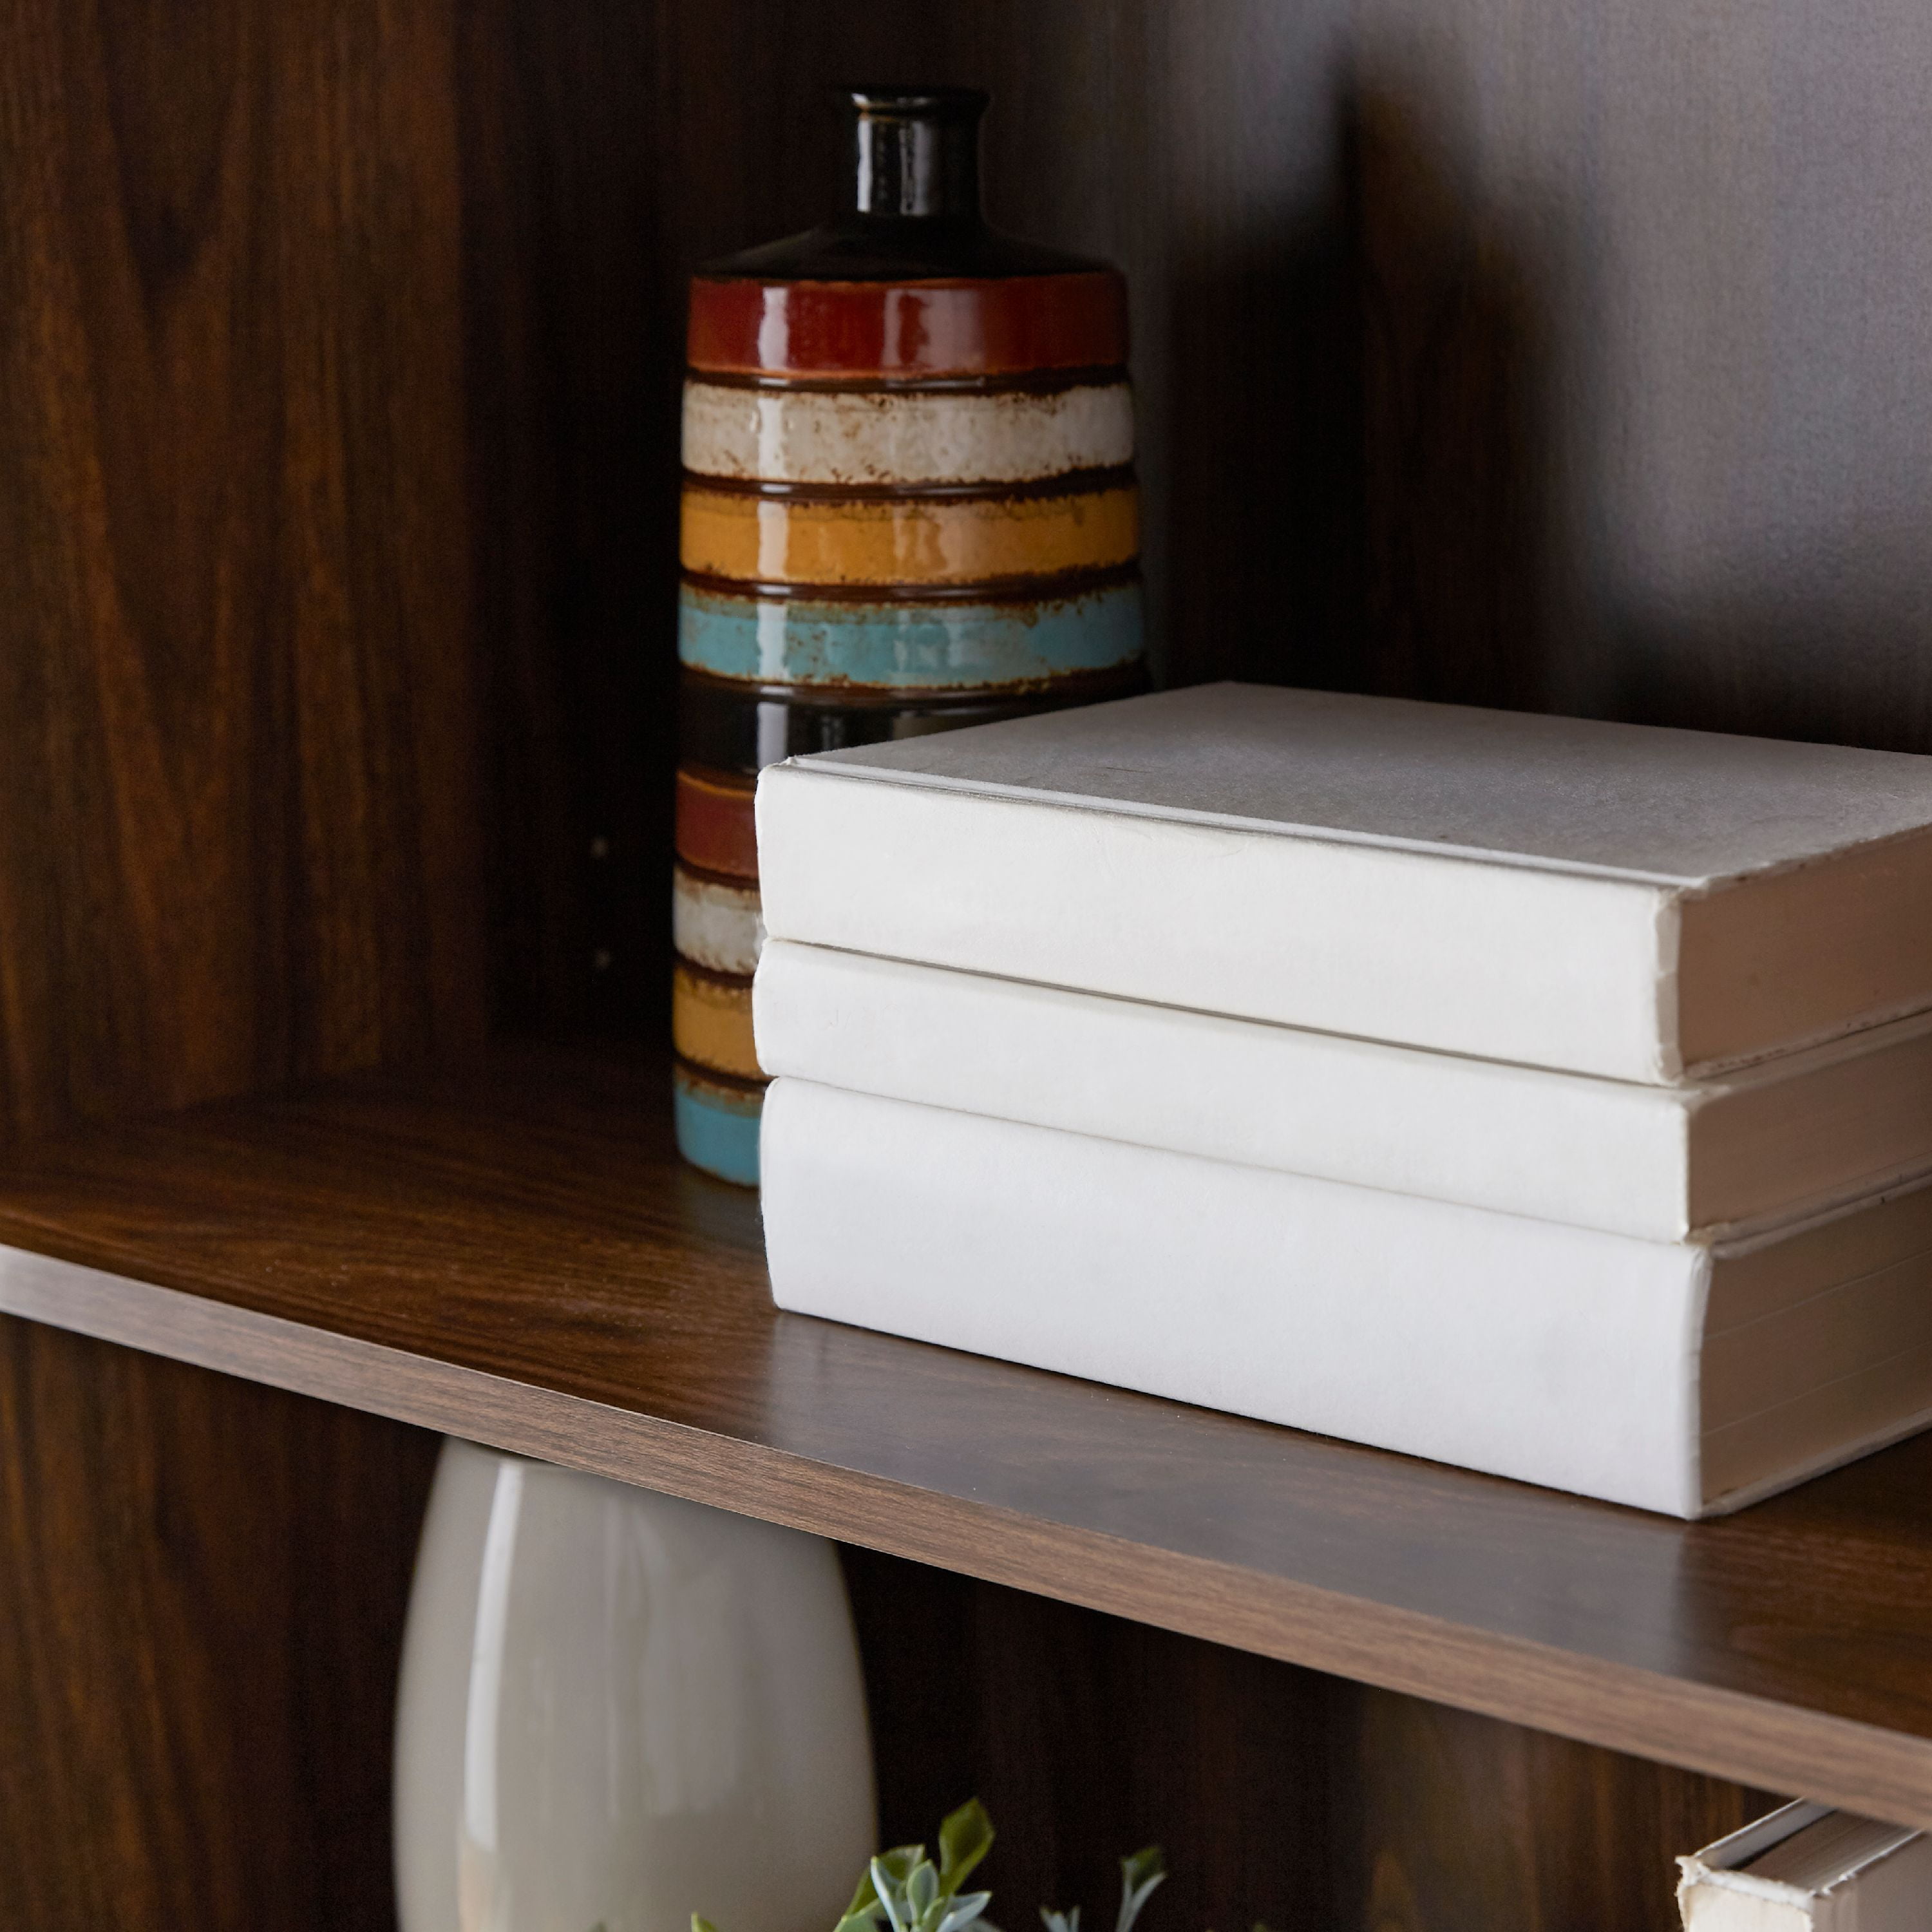 Mainstays 5-Shelf Bookcase with Adjustable Shelves, Canyon Walnut - 2